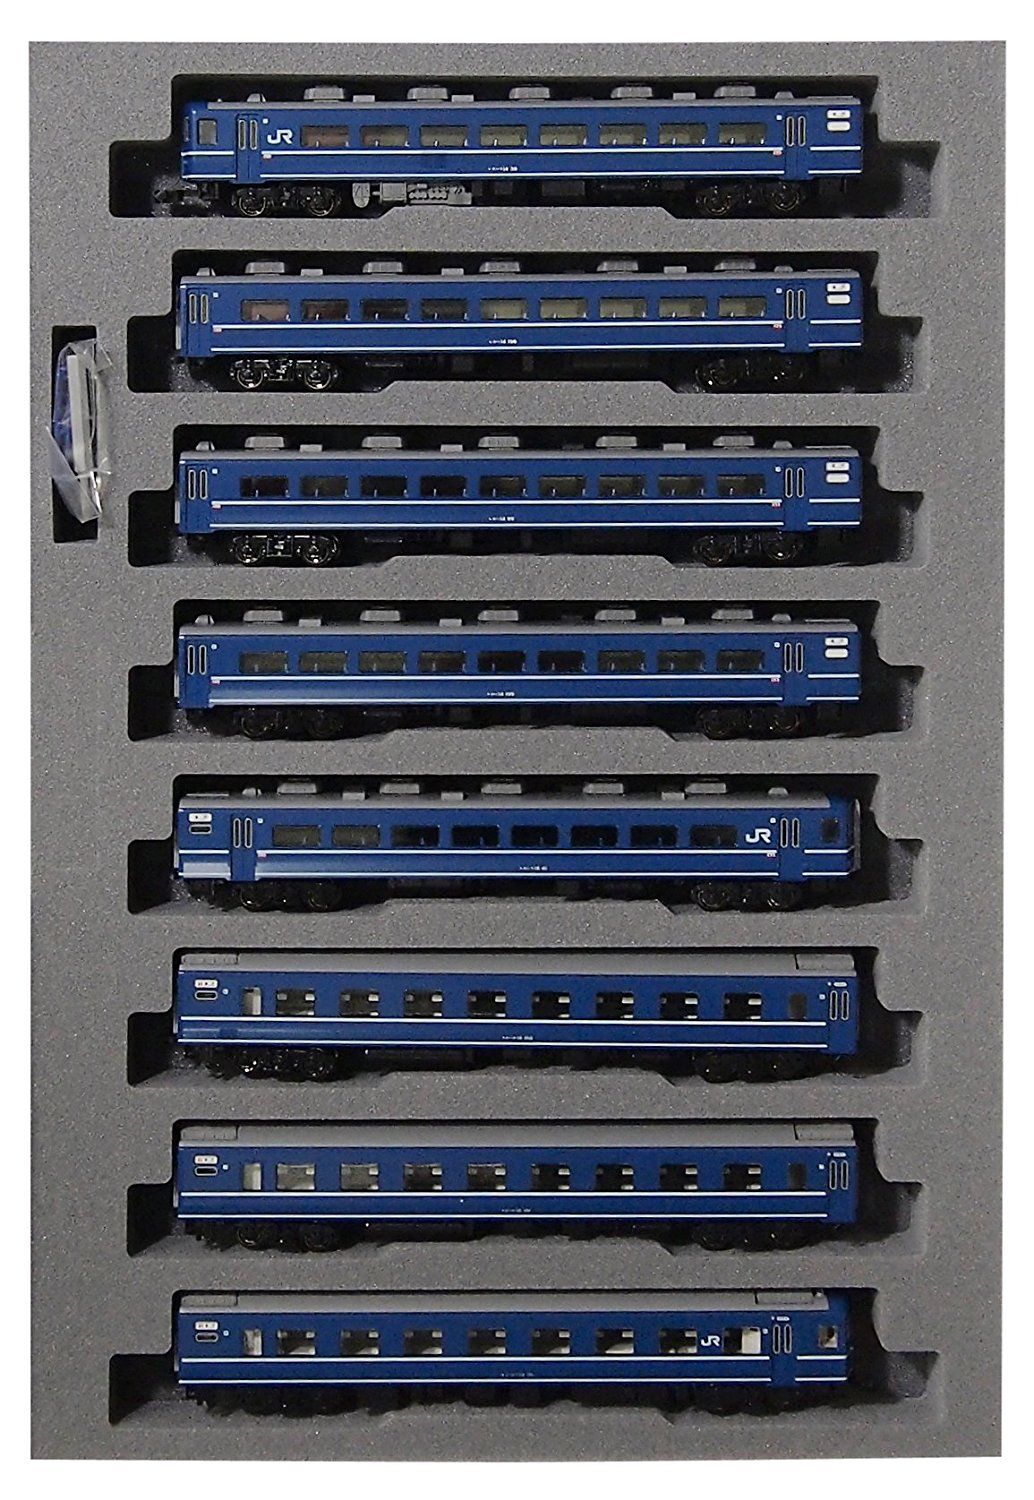 KATO 10-1438 Series 14 Express Noto J.R. Version (8-Car Set) - BanzaiHobby